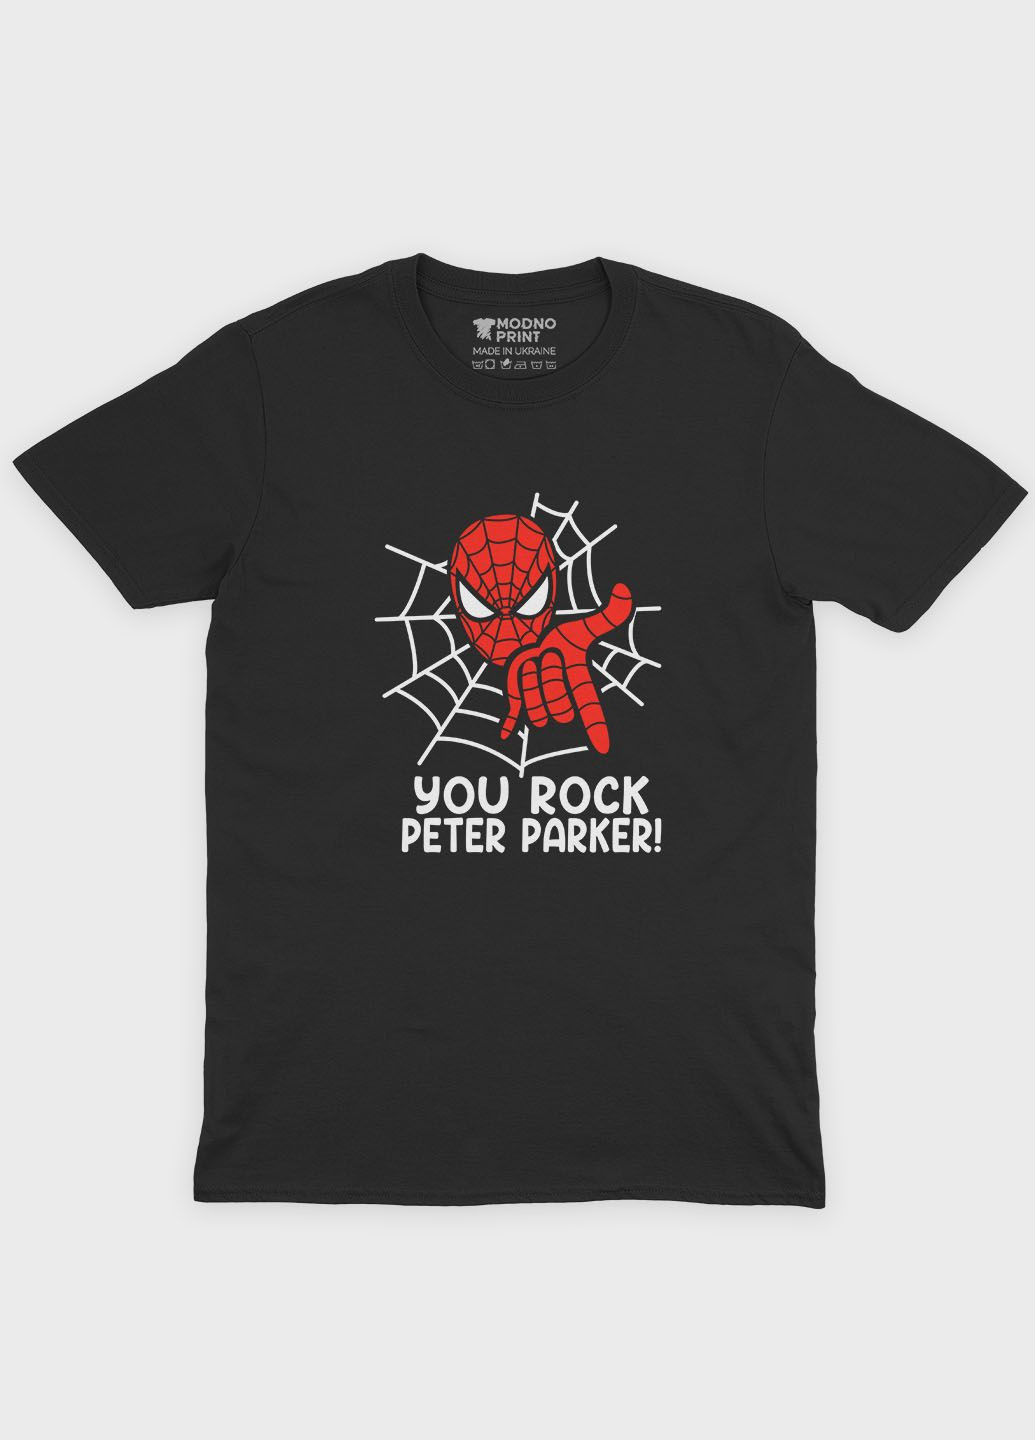 Черная демисезонная футболка для девочки с принтом супергероя - человек-паук (ts001-1-gl-006-014-102-g) Modno